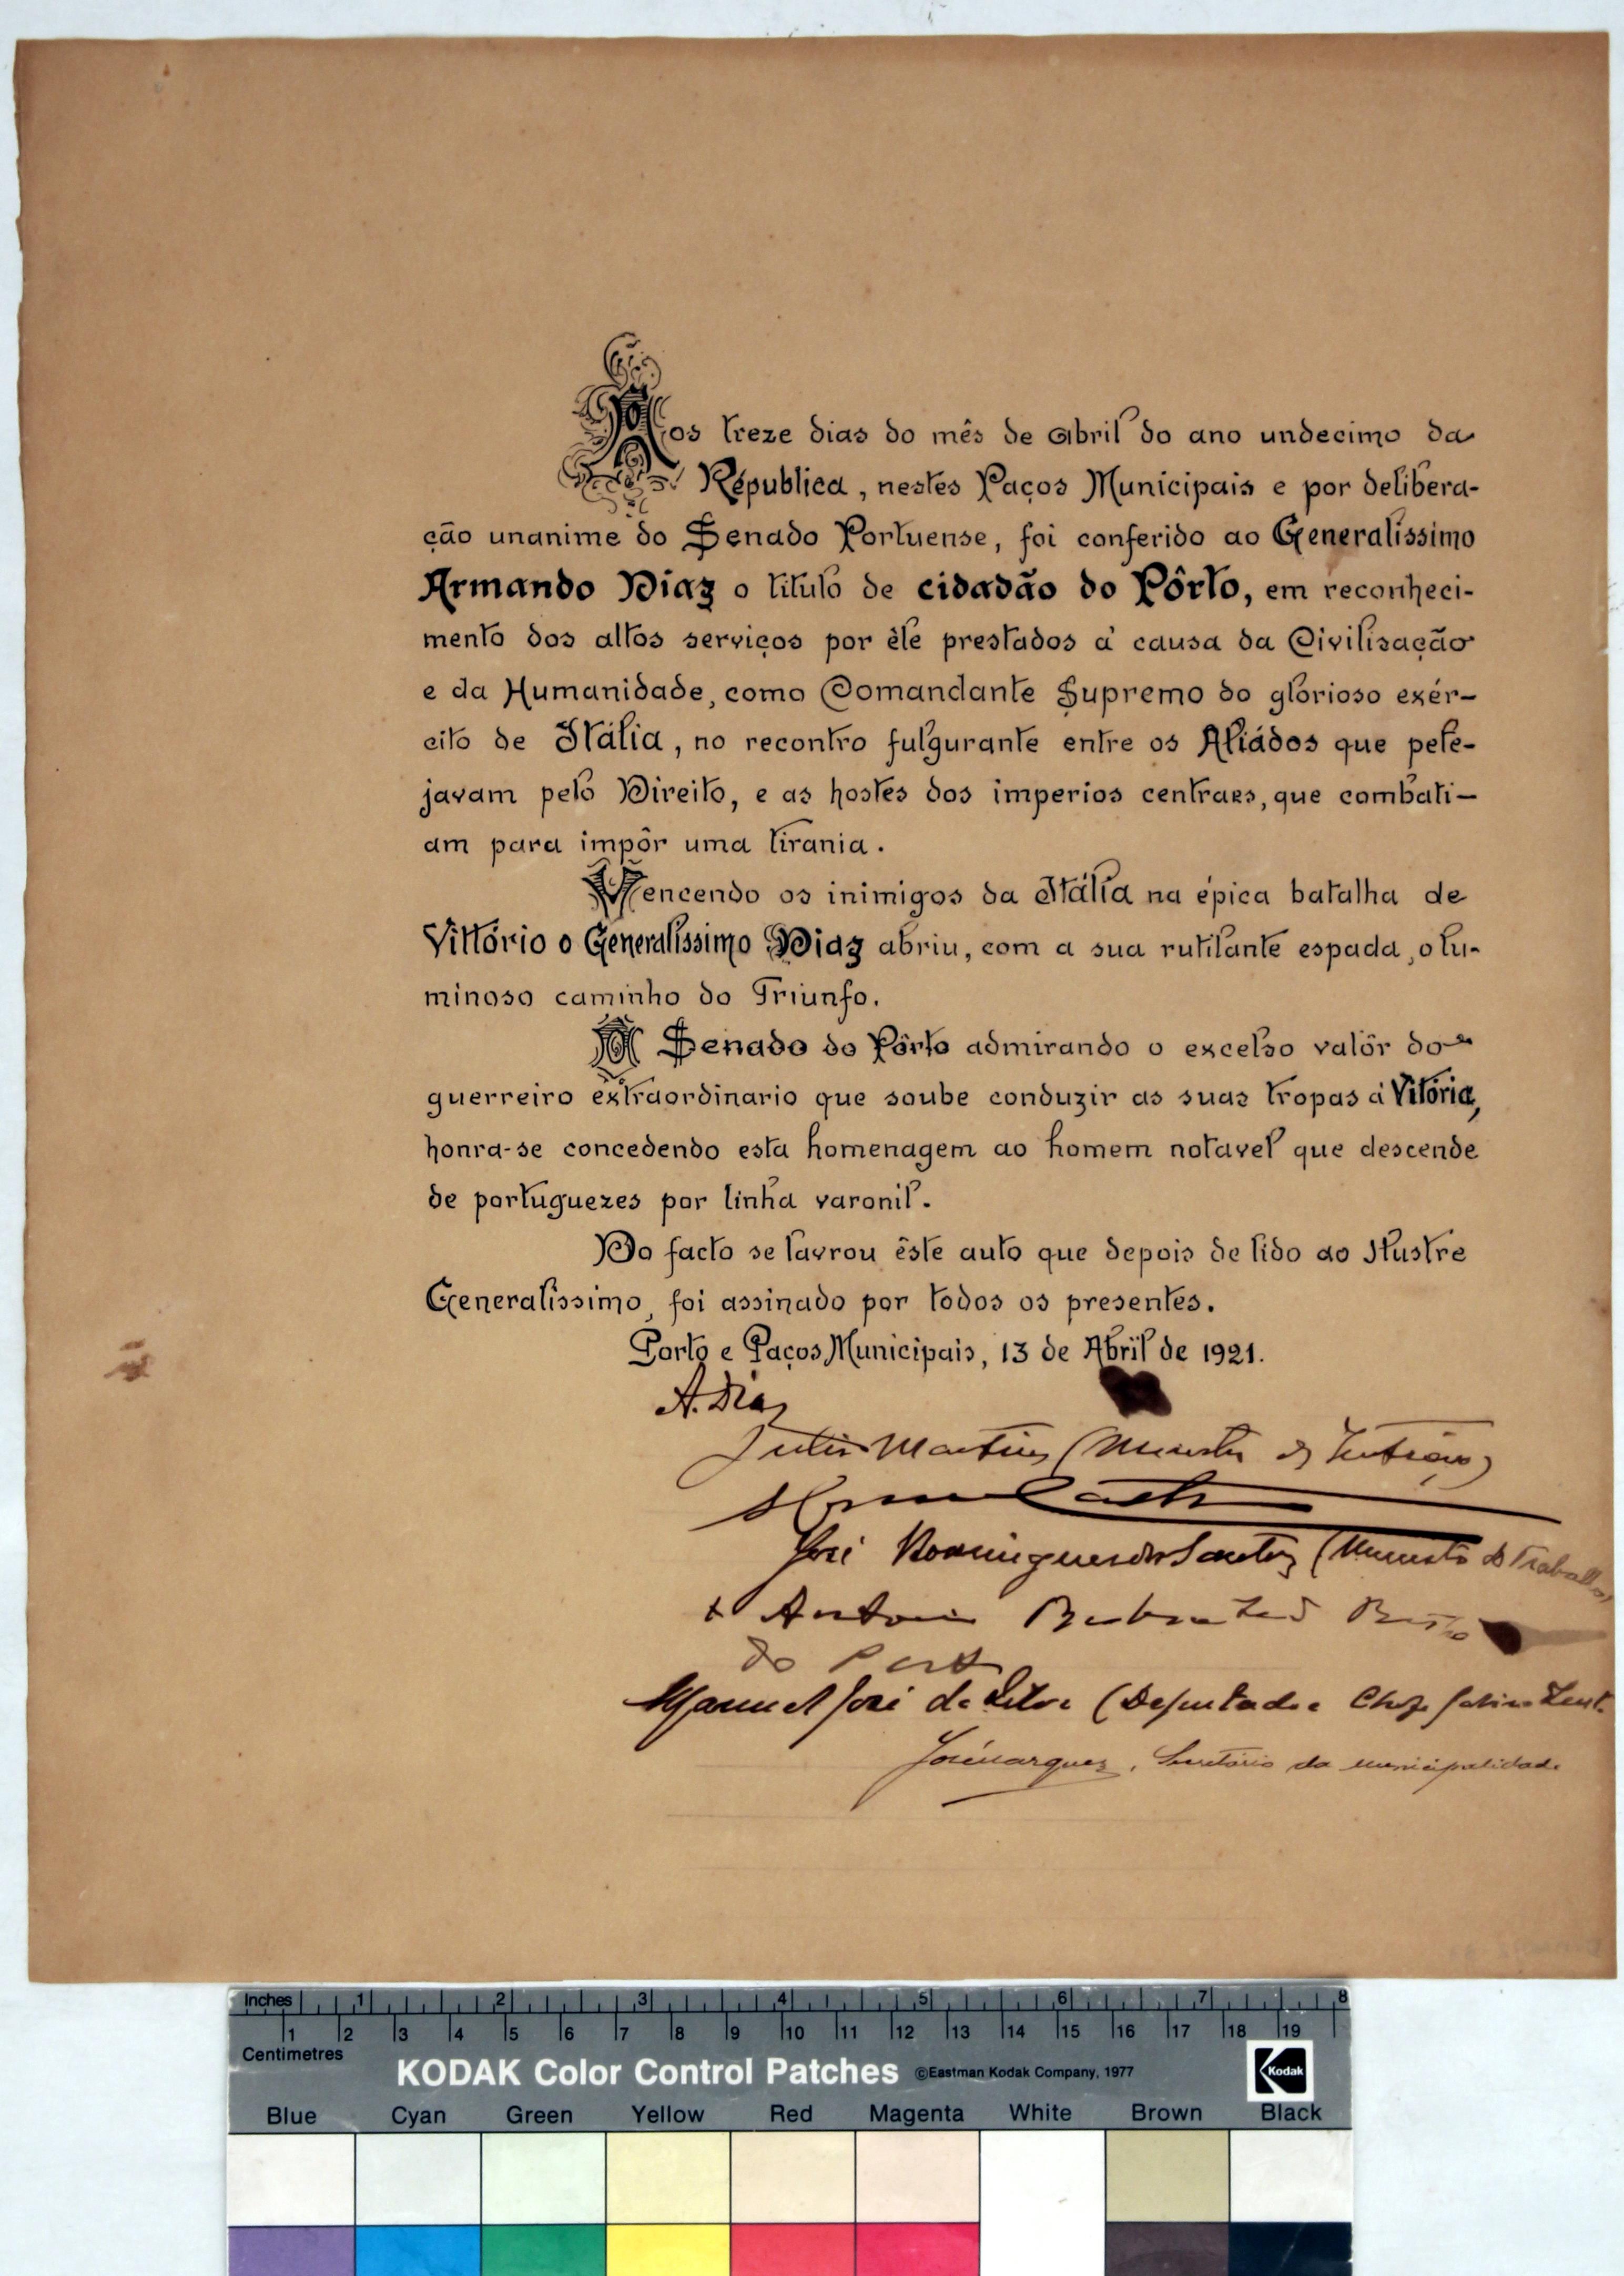 [Auto de concessão do título de cidadão do Porto ao generalíssimo Armando Diaz em reconhecimento pelos serviços prestados na Batalha de Vitório]